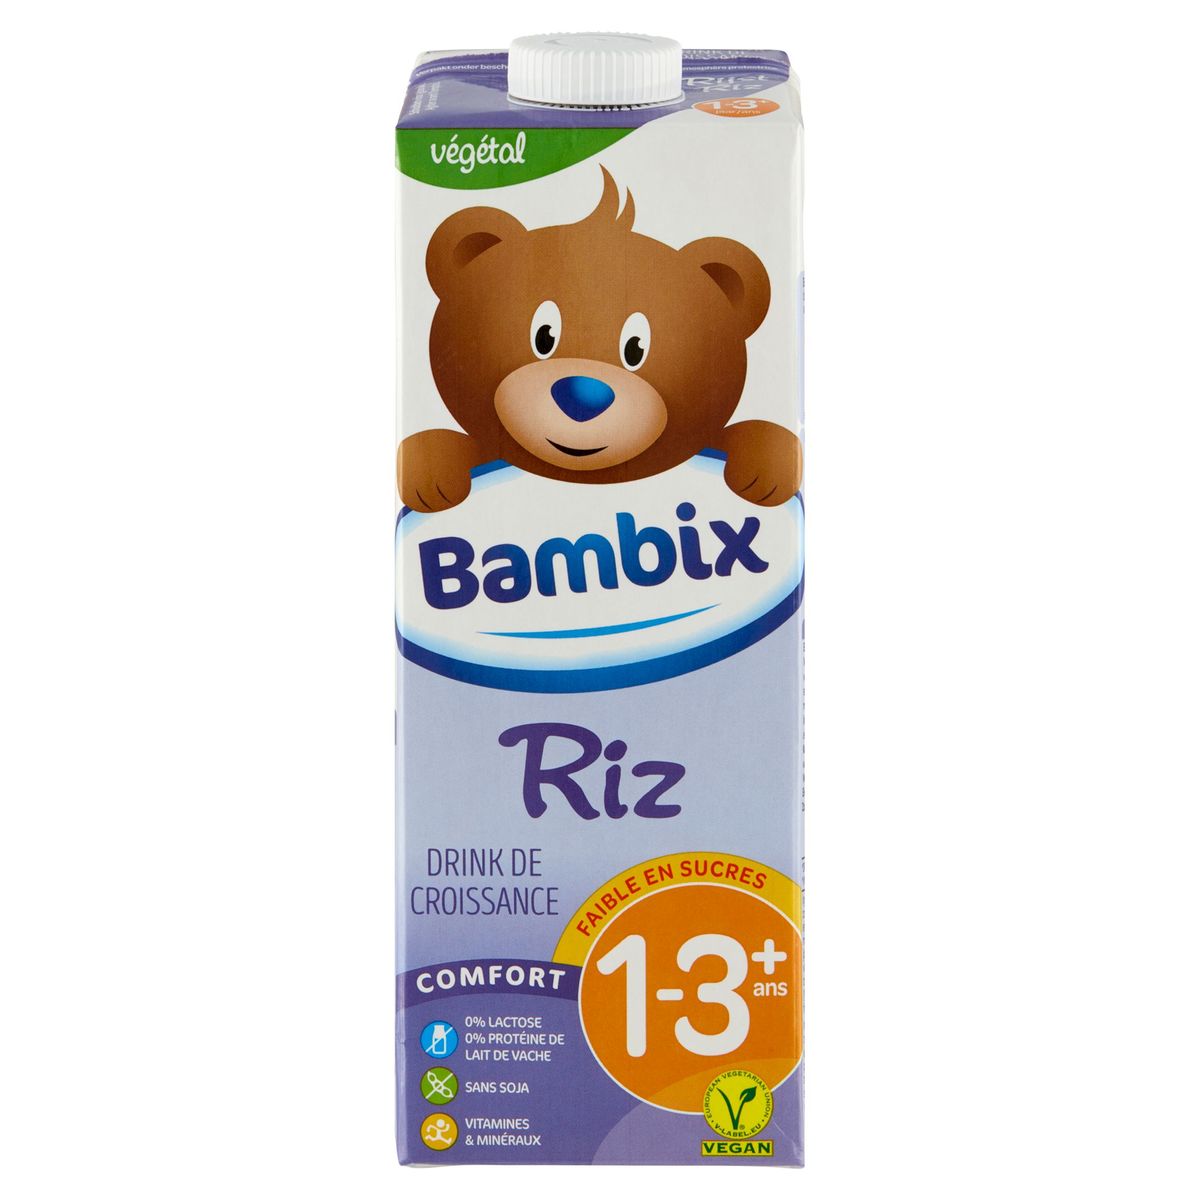 Bambix Riz Drink de Croissance Comfort 1-3+ Ans 1 L